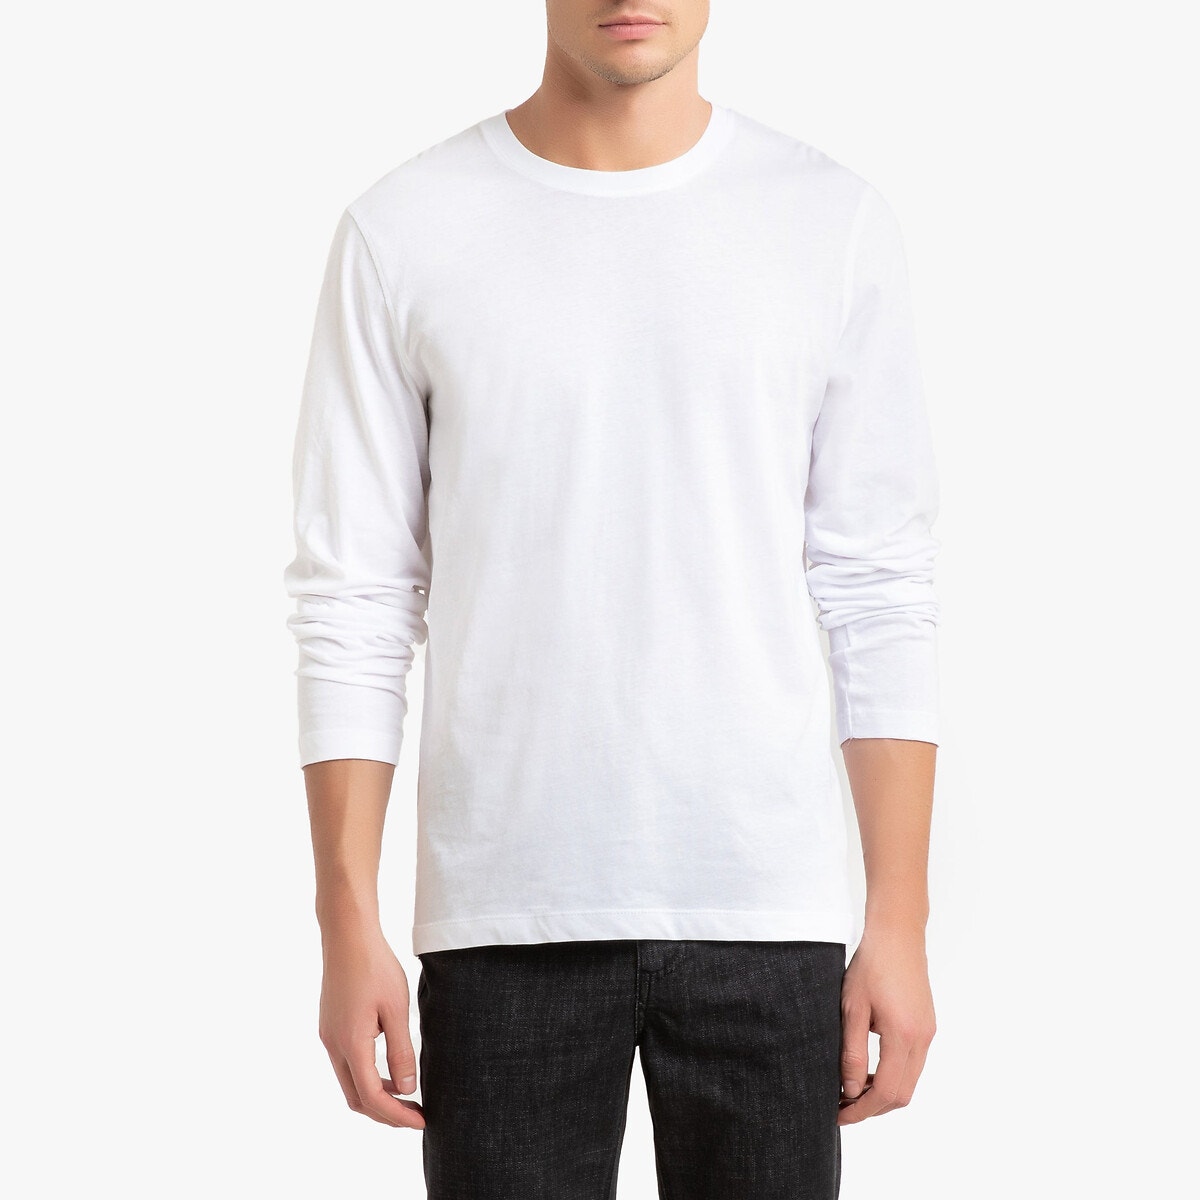 Μπλούζα jersey από μικτό βαμβάκι ΑΝΔΡΑΣ | Μπλούζες & Πουκάμισα | T-shirts